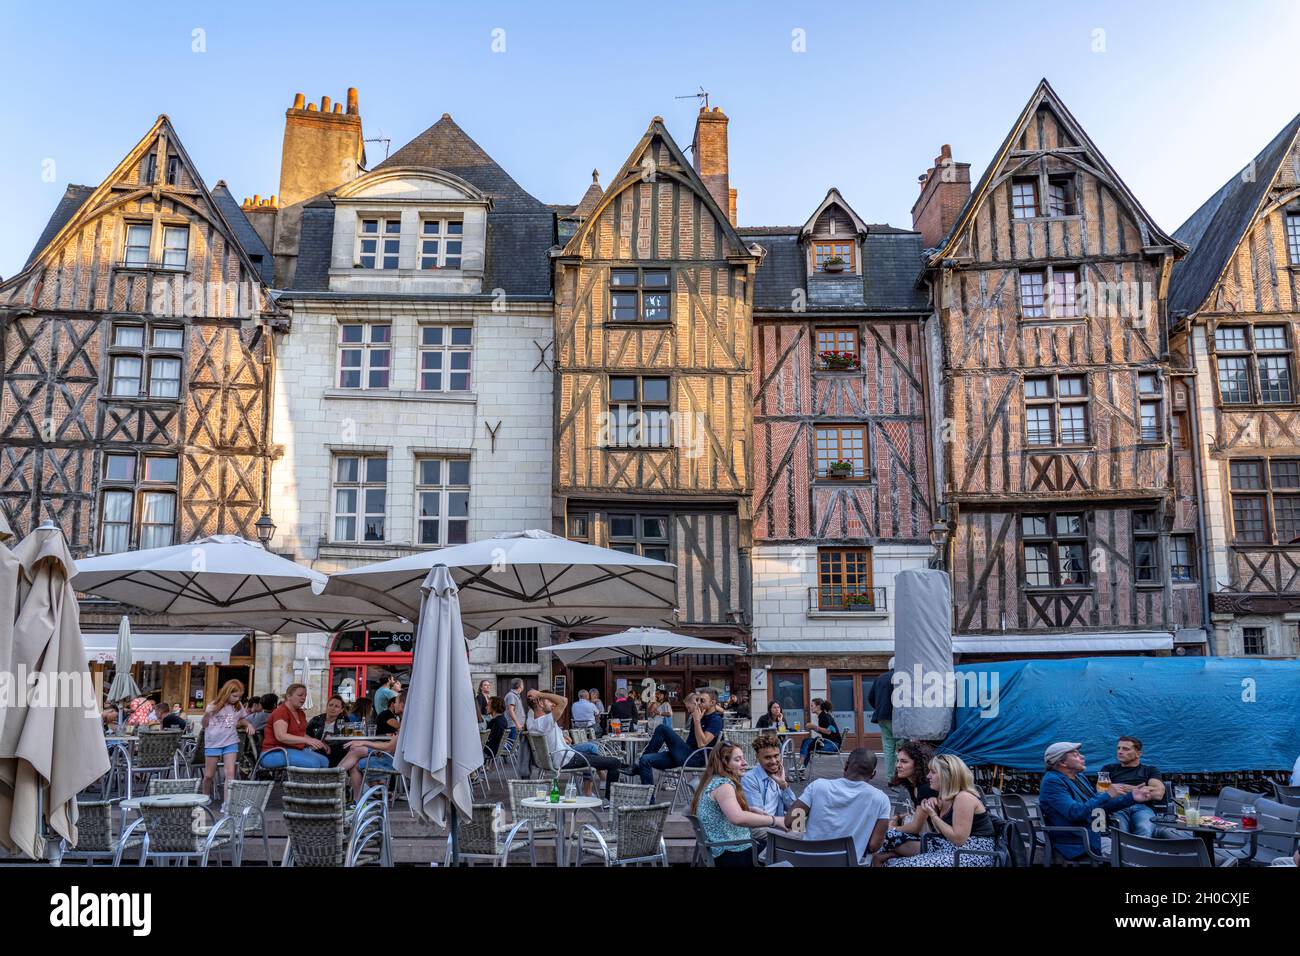 Mittelalterliche Gebäude und voll besetzte  Restaurants auf dem zentralen Platz Place Plumereau, Tours, Loiretal, Frankreich  |  Medieval buildings an Stock Photo